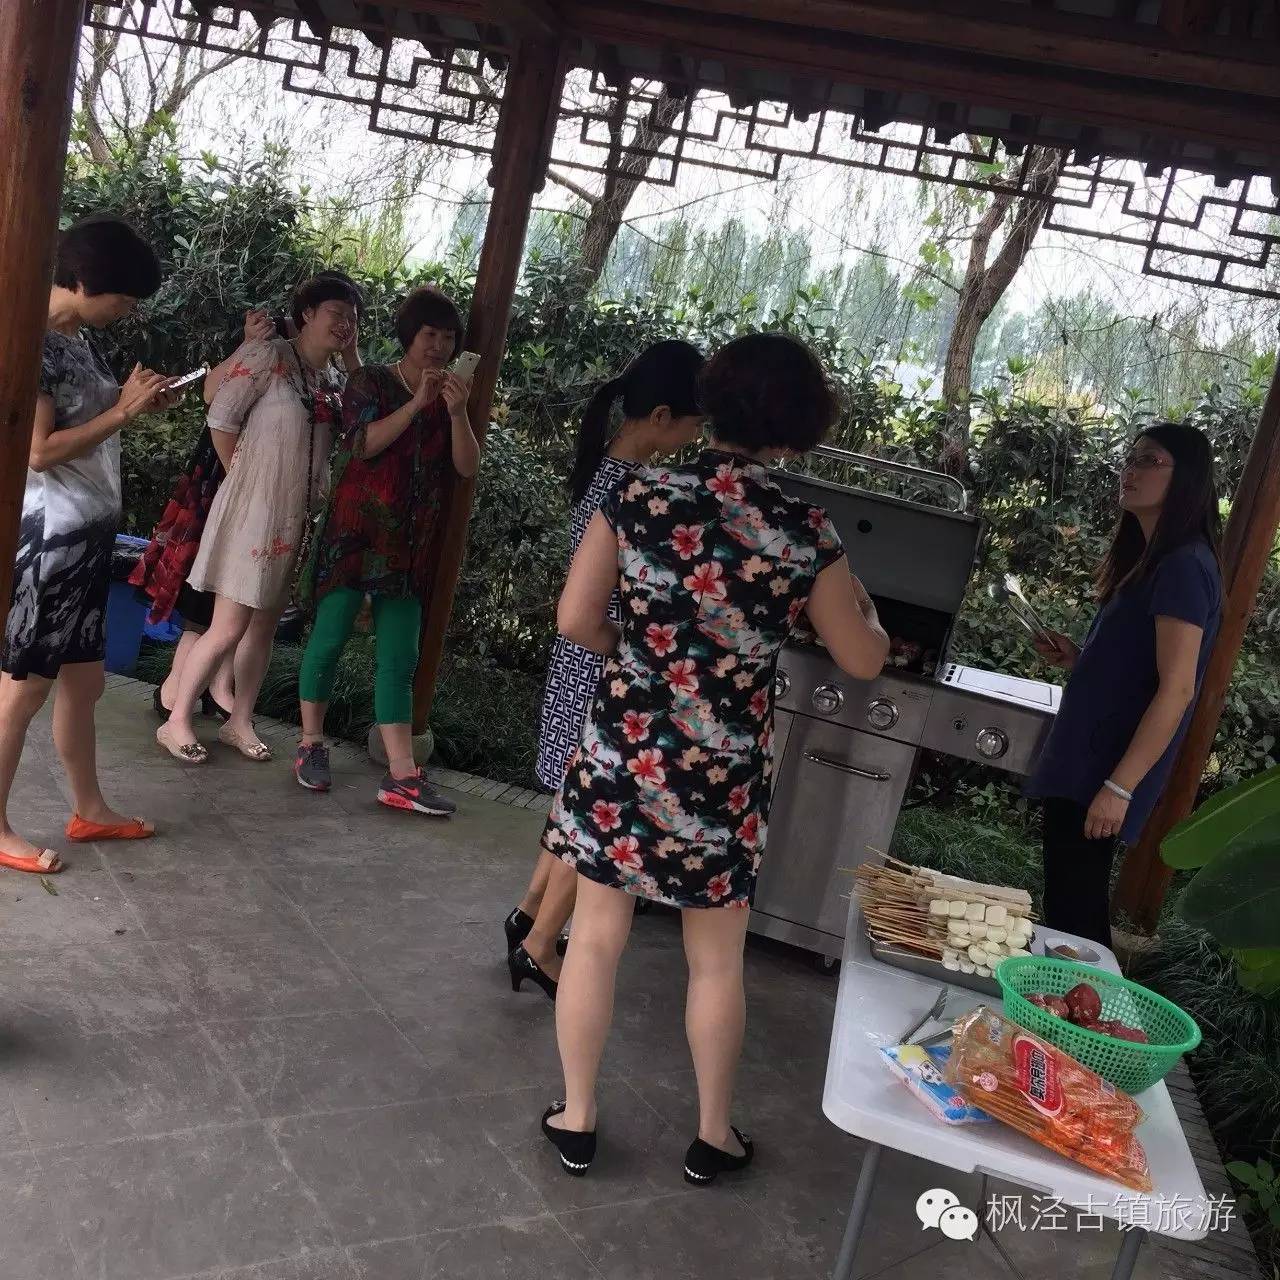 【国庆假期】为什么大家都喜欢来枫泾?